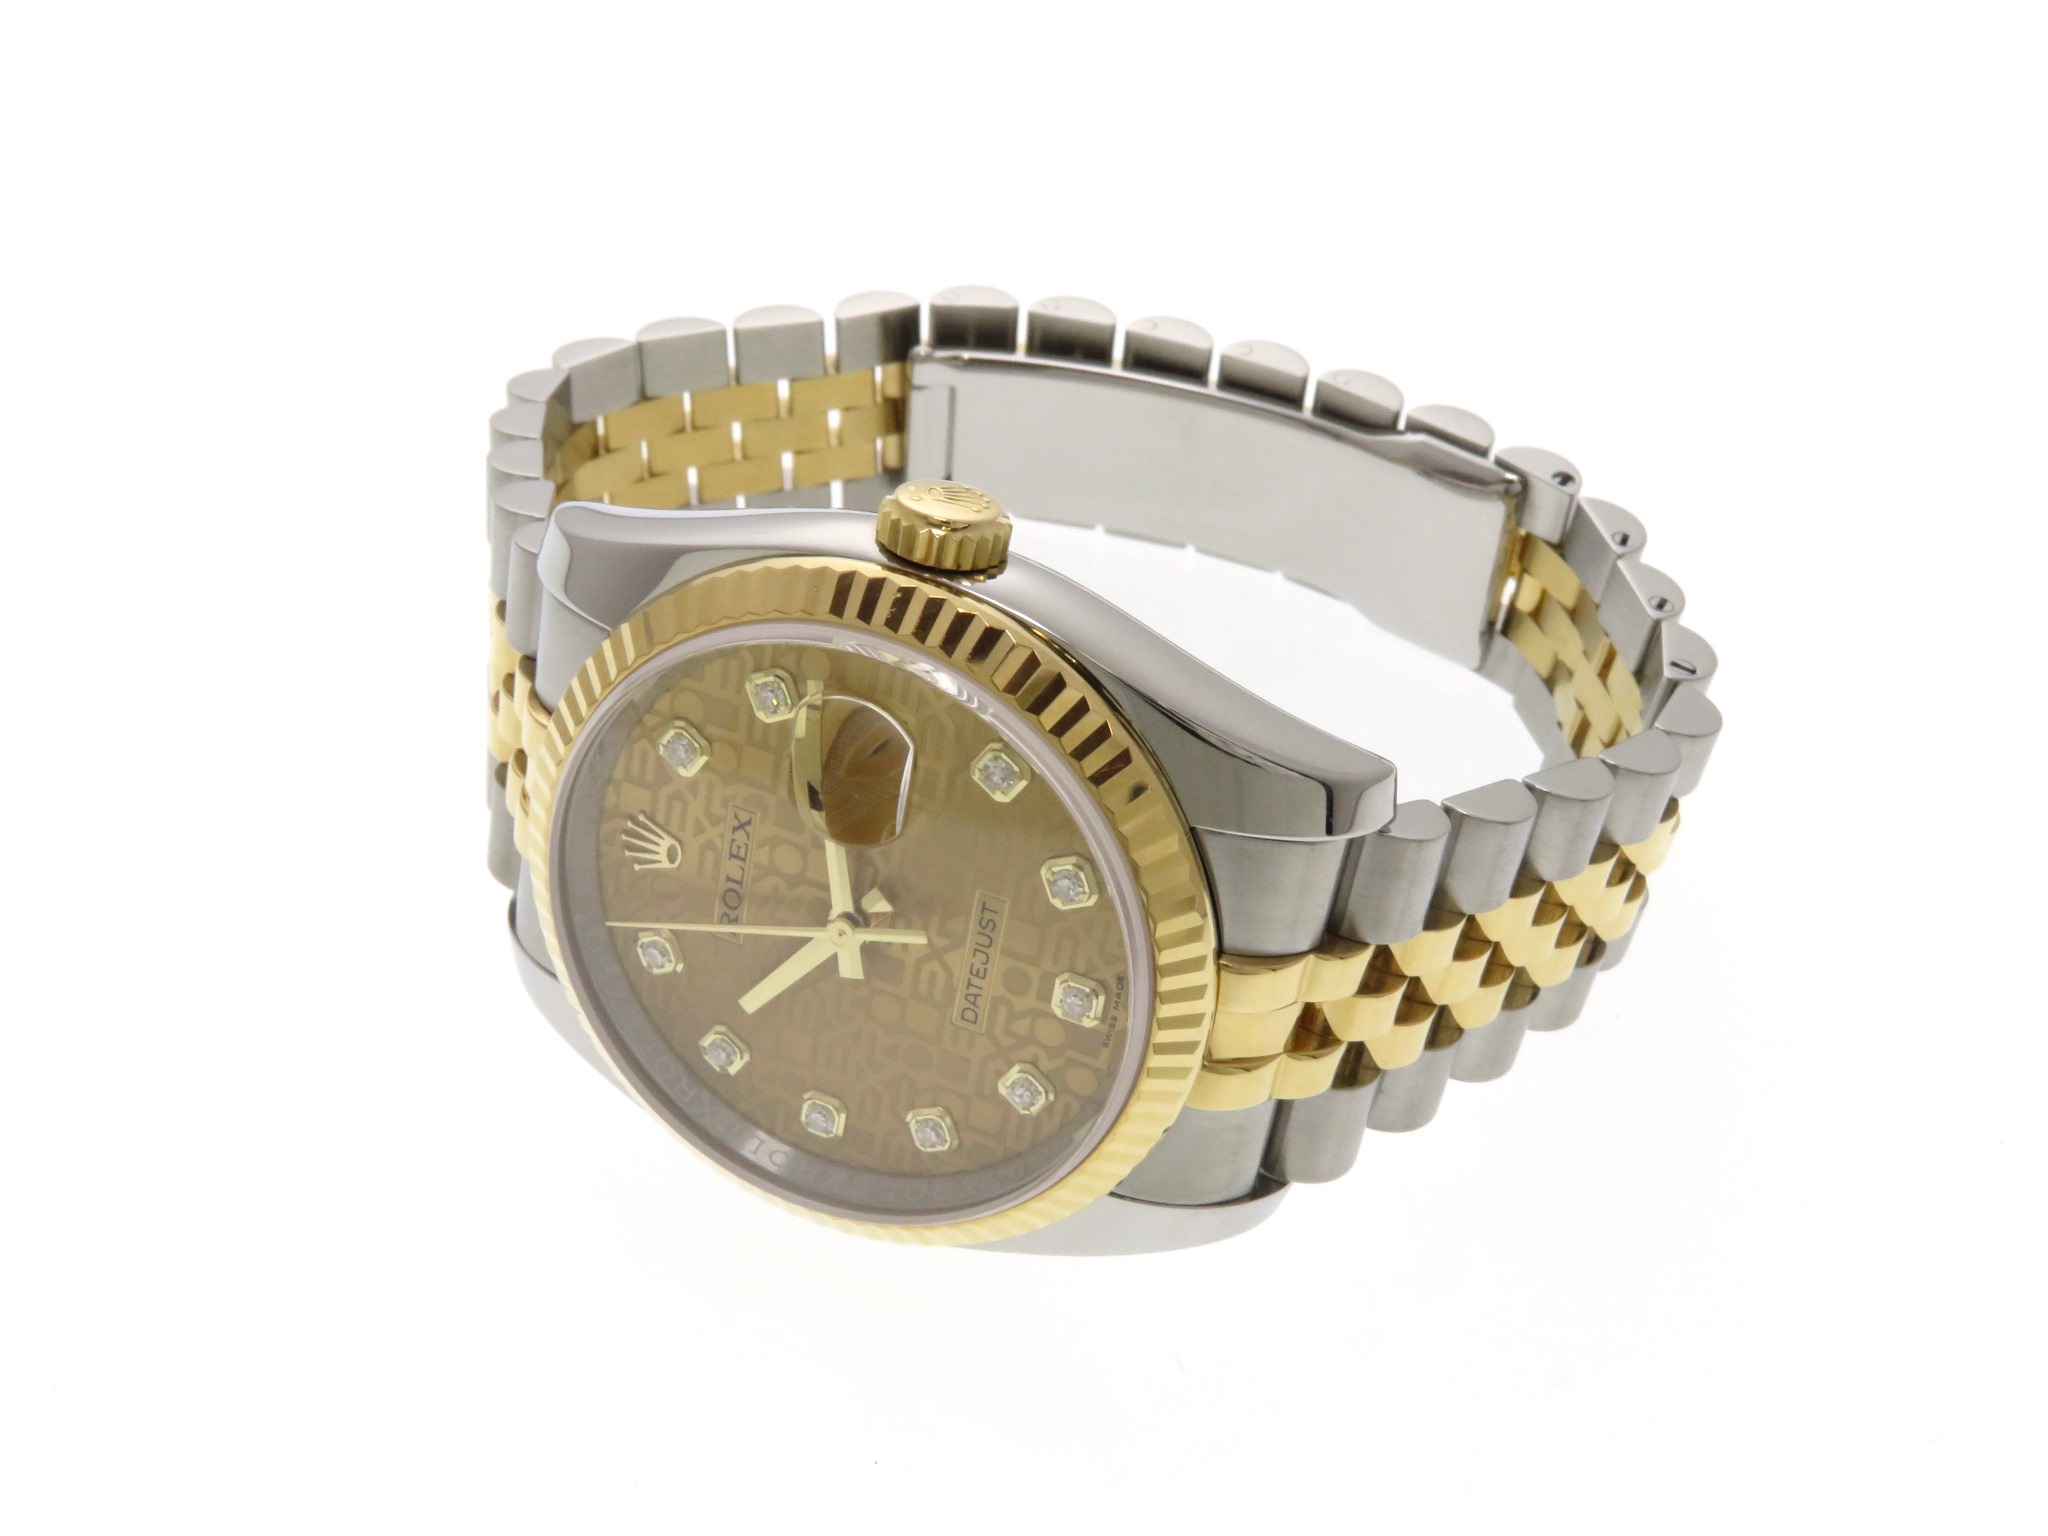 ロレックス ROLEX デイトジャスト36 ランダムシリアル 116233 シルバー文字盤 K18YG/SS 自動巻き メンズ 腕時計